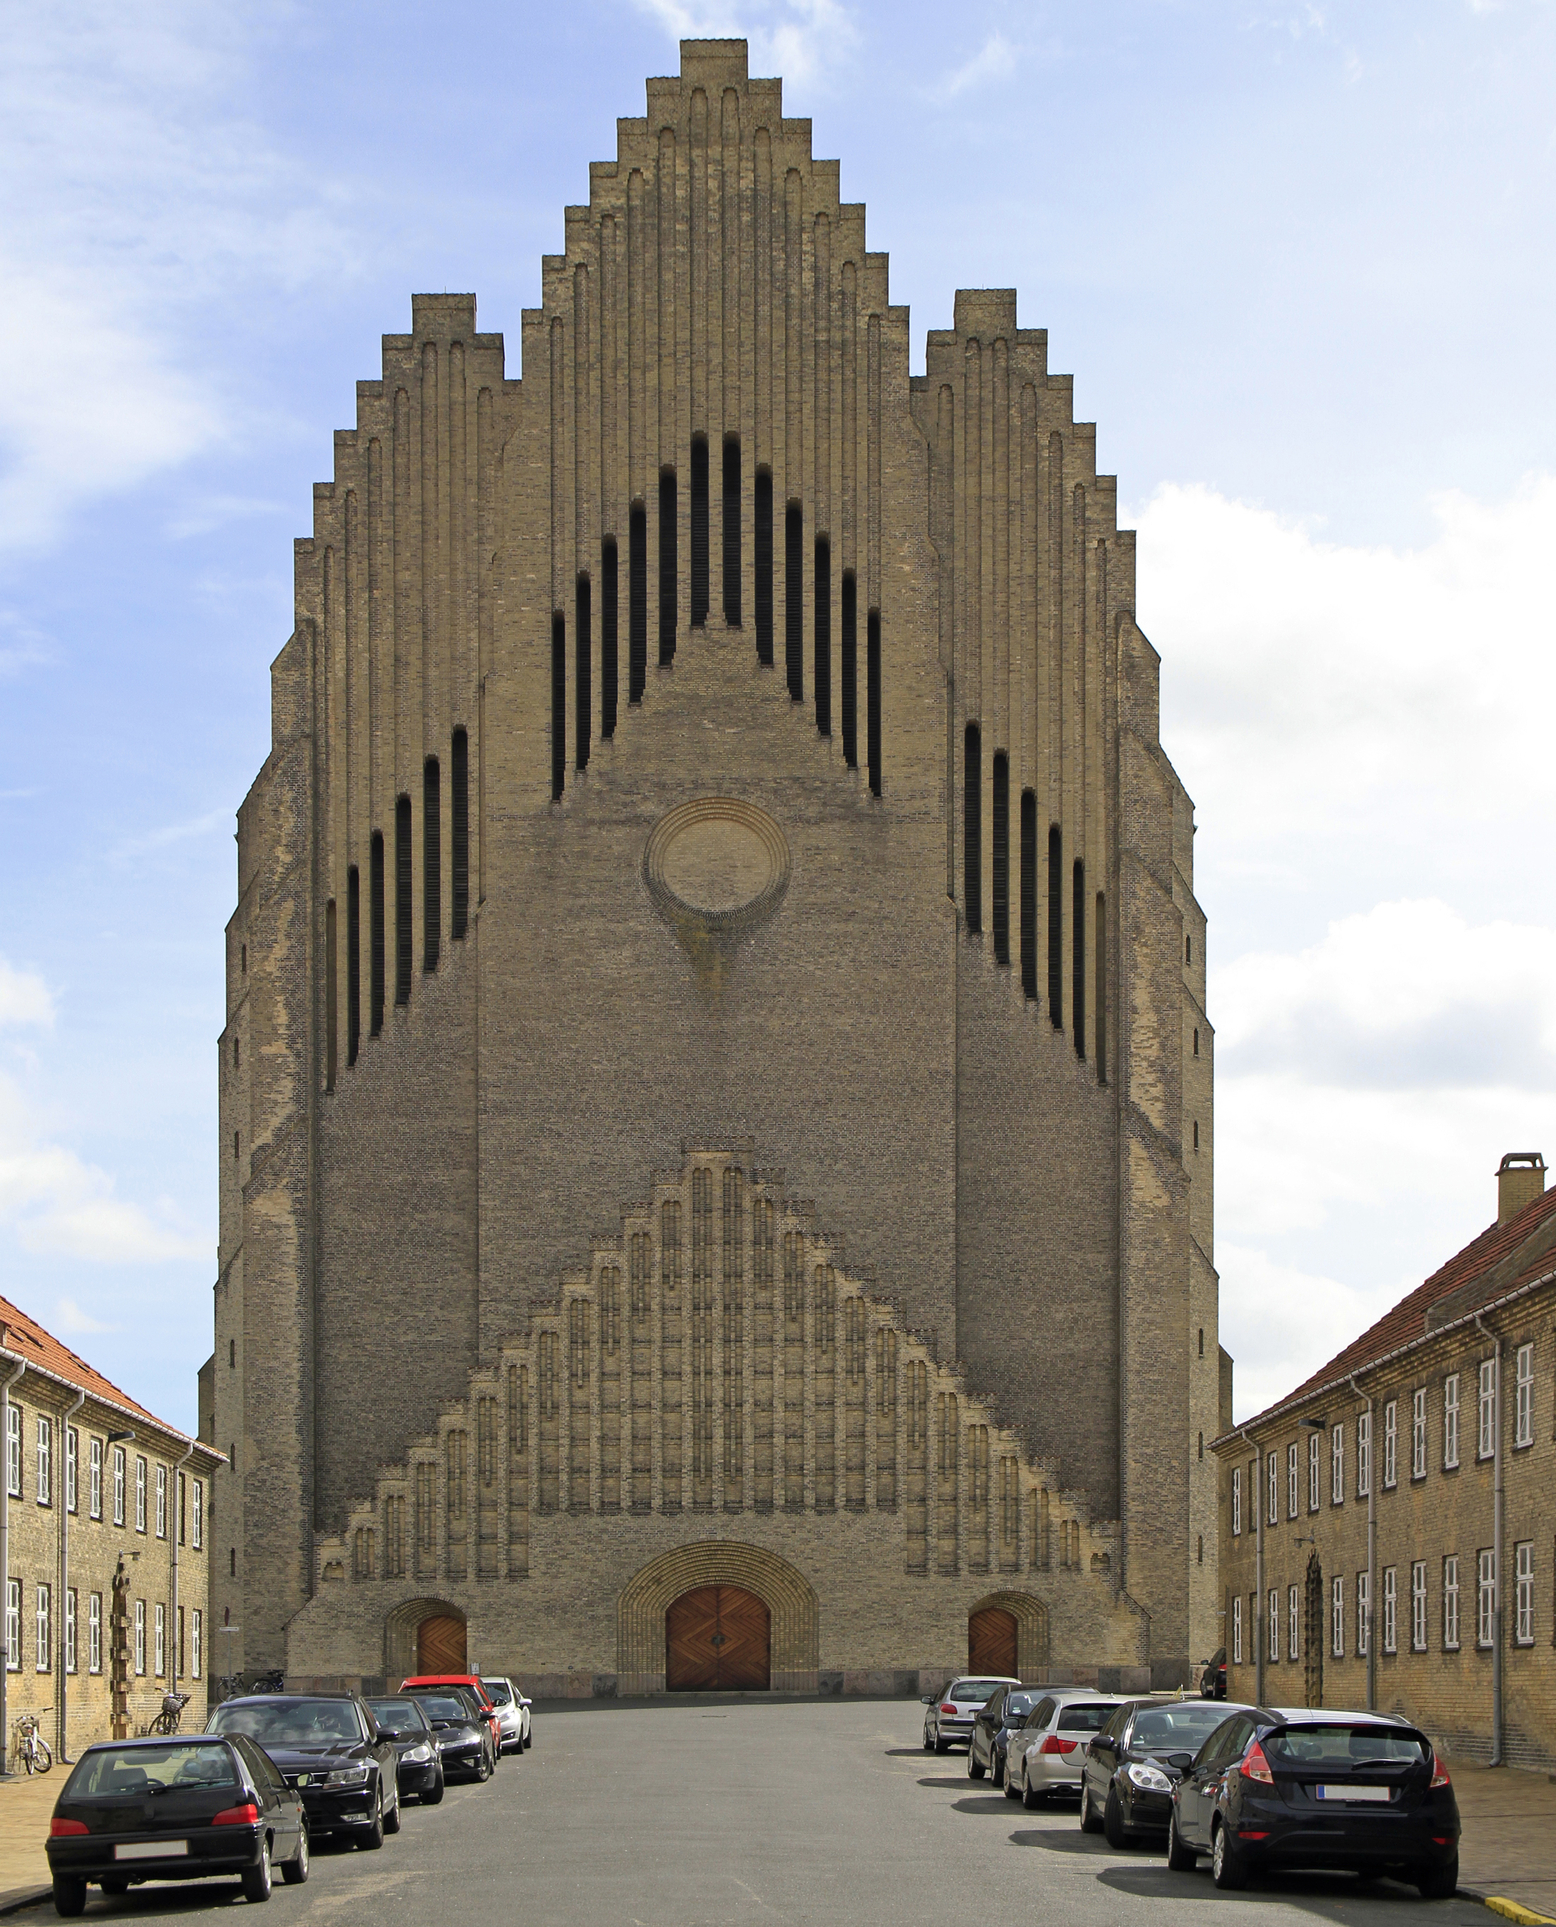 Peste 70% din danezi sunt membri ai Bisericii Lutherane; Faimoasa biserică luterană Grundtvig`s din Copenhaga, Danemarca, sursă foto Dreamstime